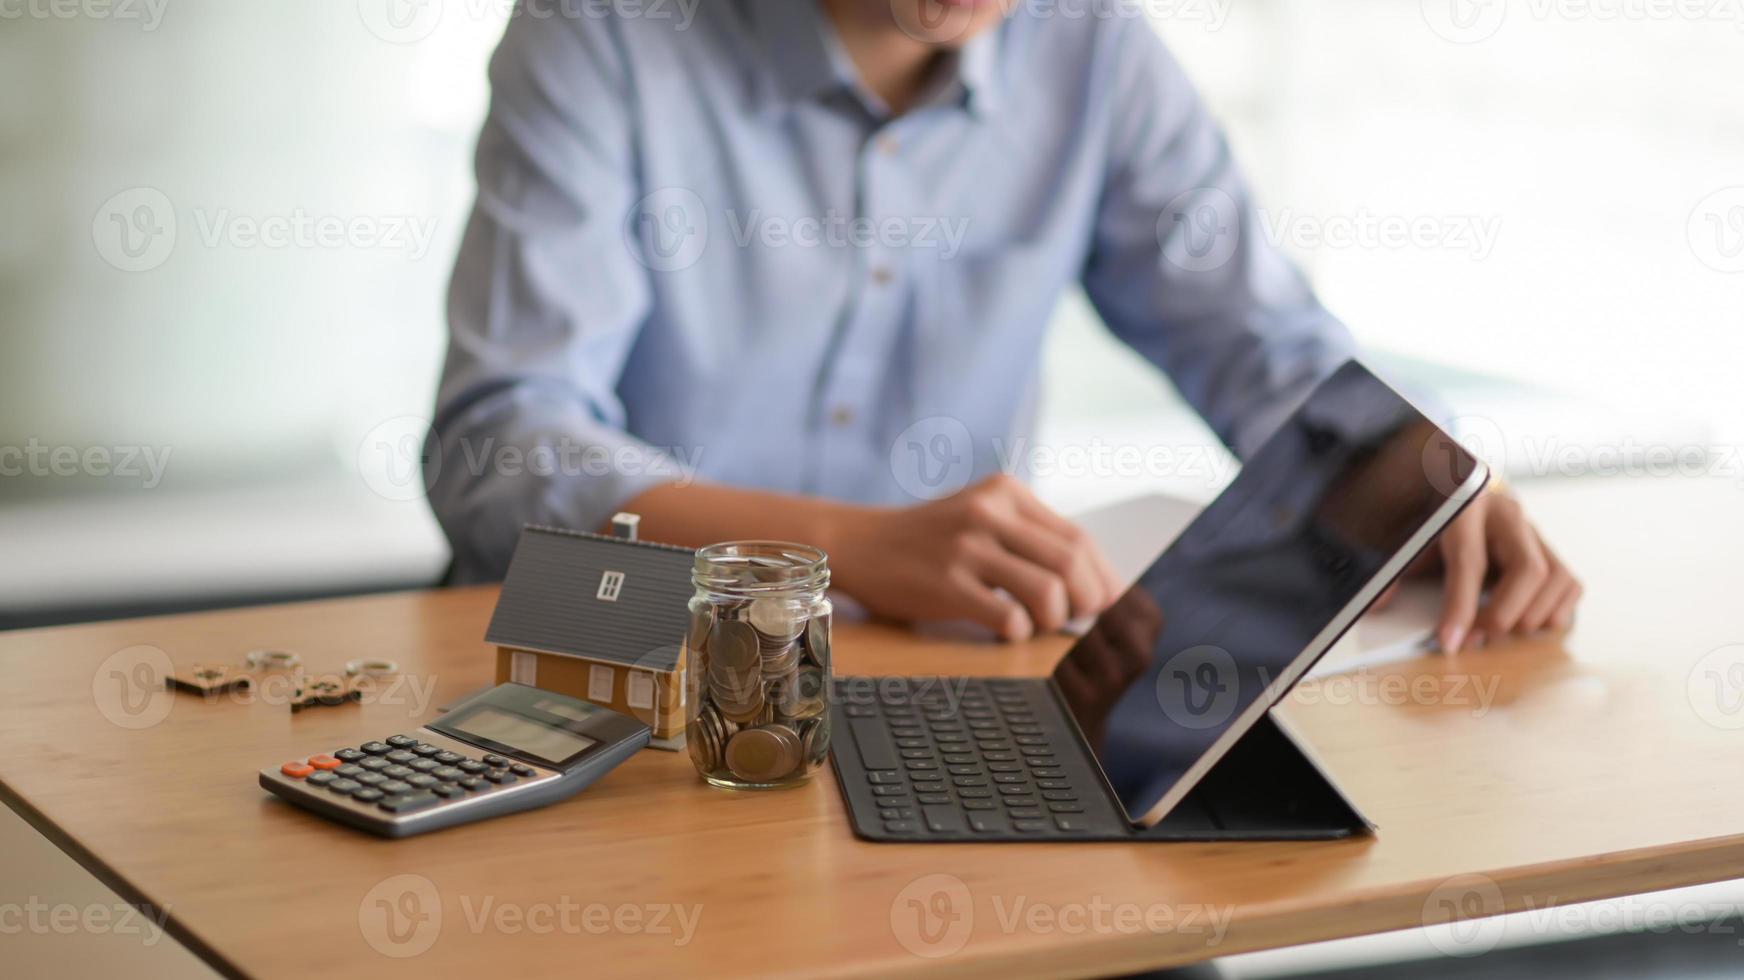 laptop, moeda em uma garrafa de vidro, calculadora com uma casa modelo na mesa e um fundo borrado pessoas sentadas assistindo documentos. foto